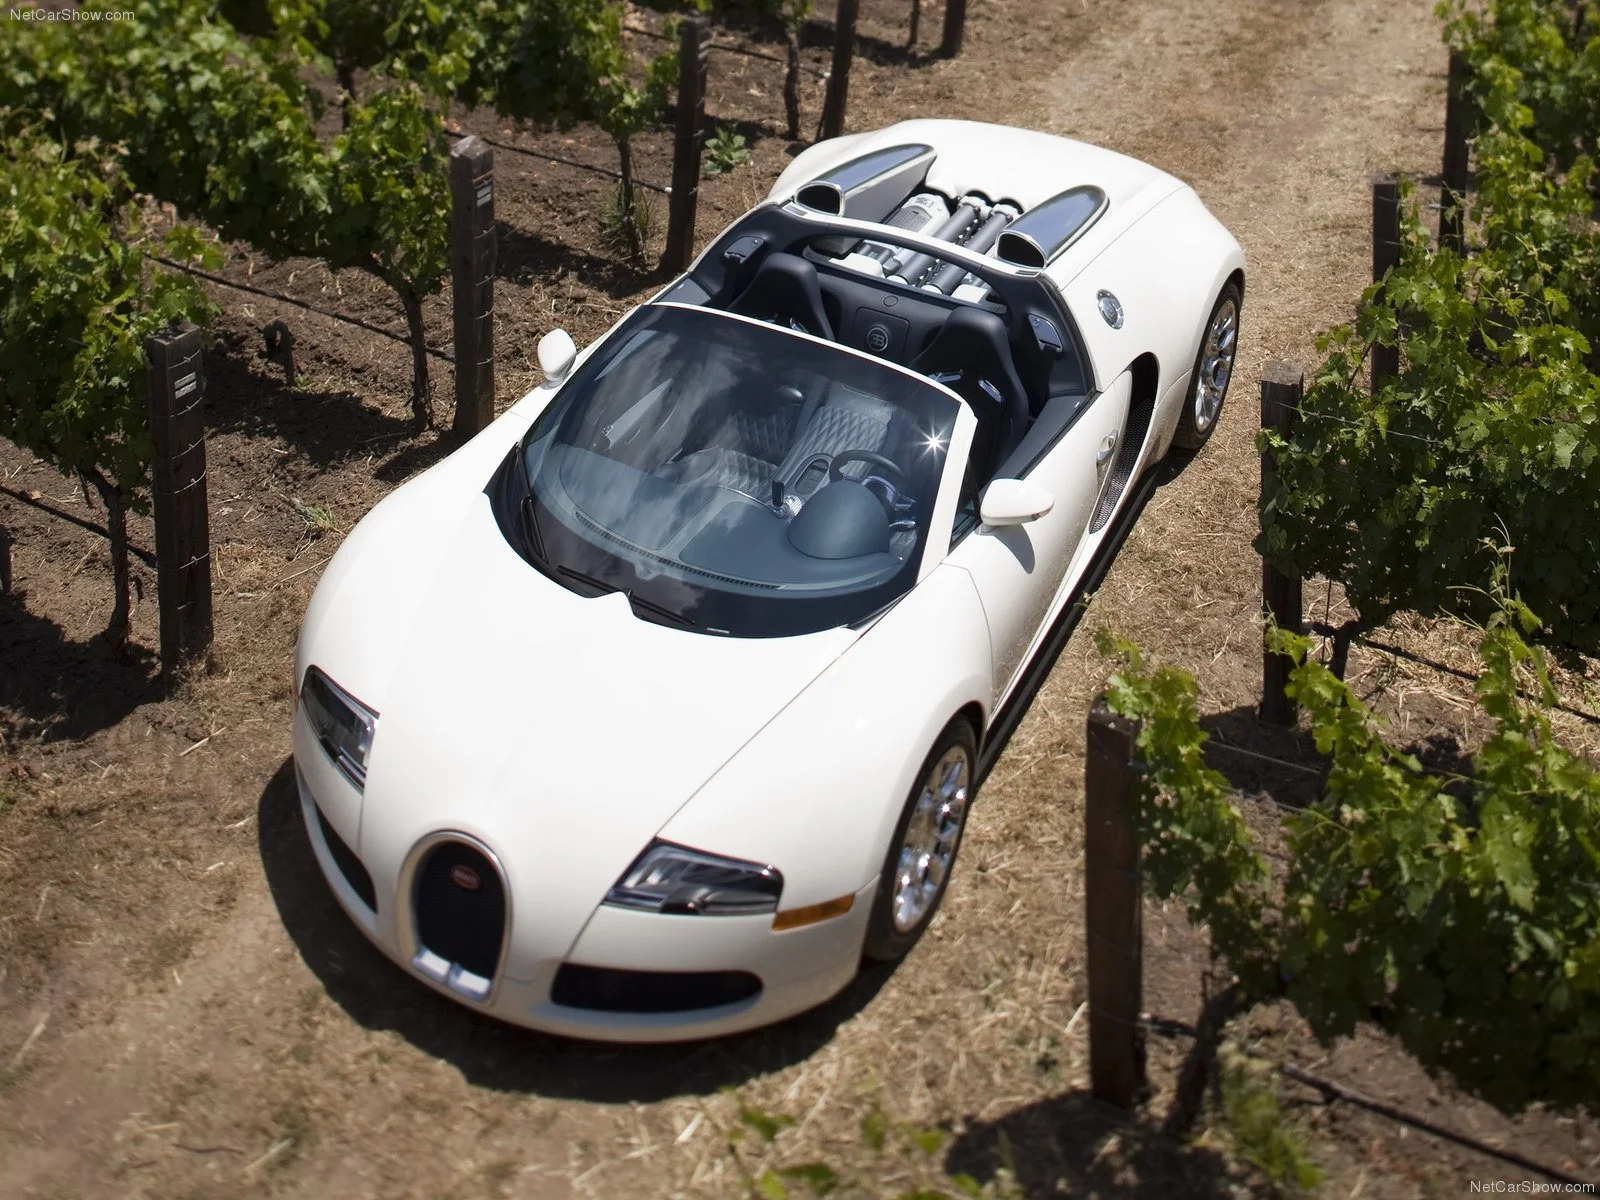 Hình ảnh siêu xe Bugatti Veyron Grand Sport 2009 & nội ngoại thất